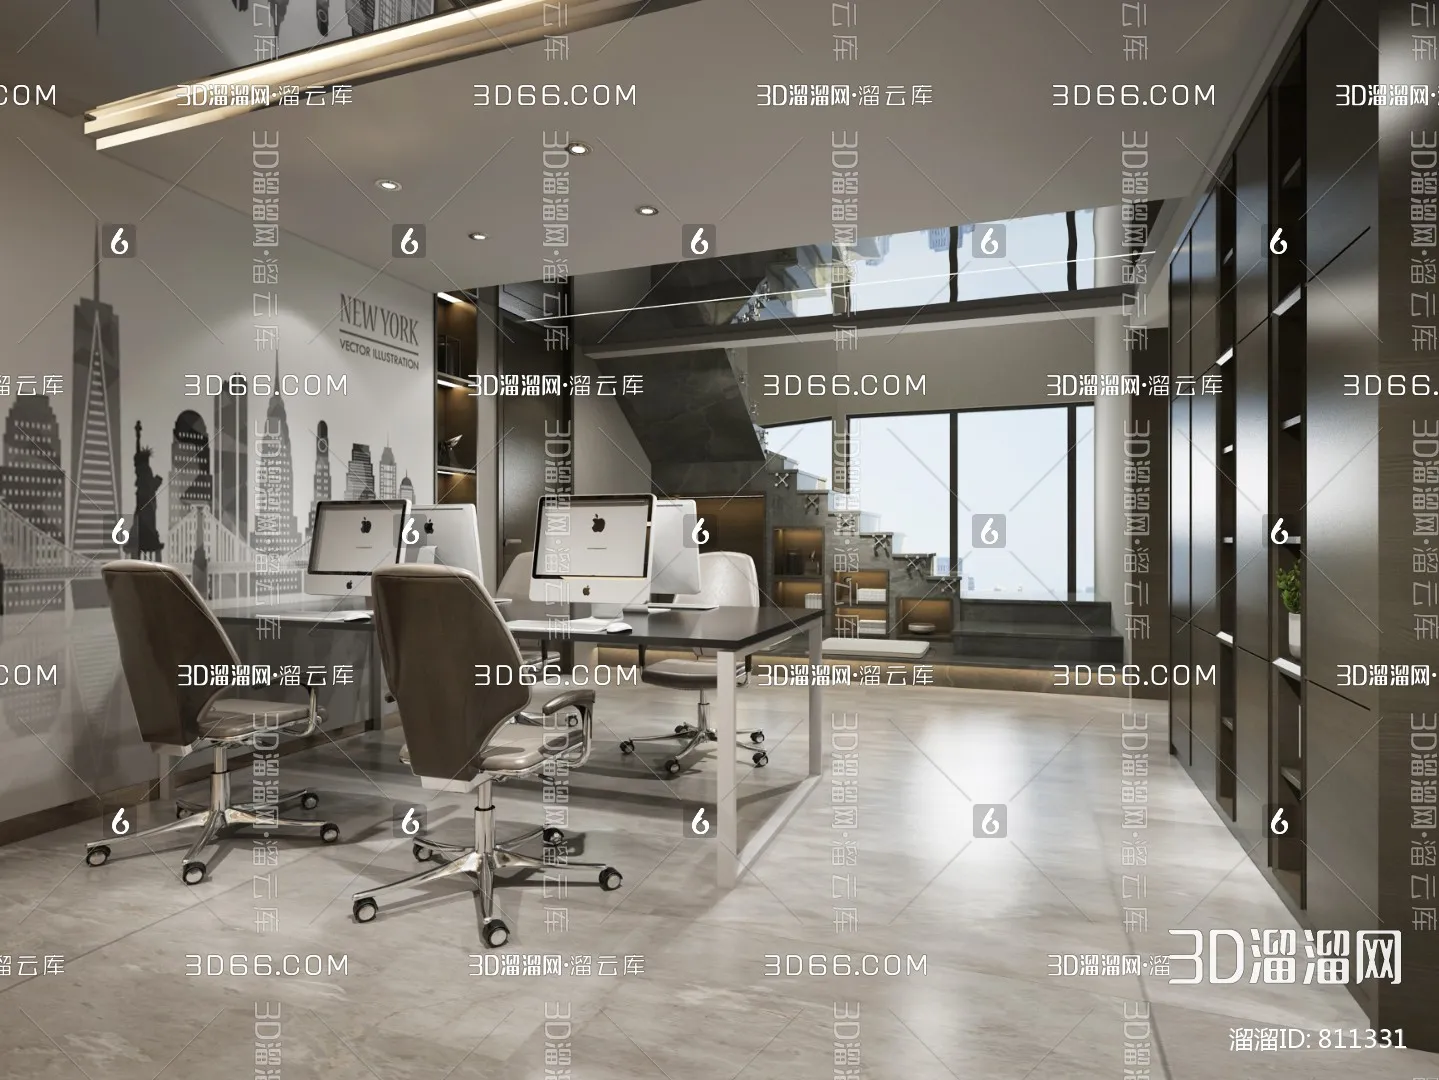 Office 3D Scenes – 0635